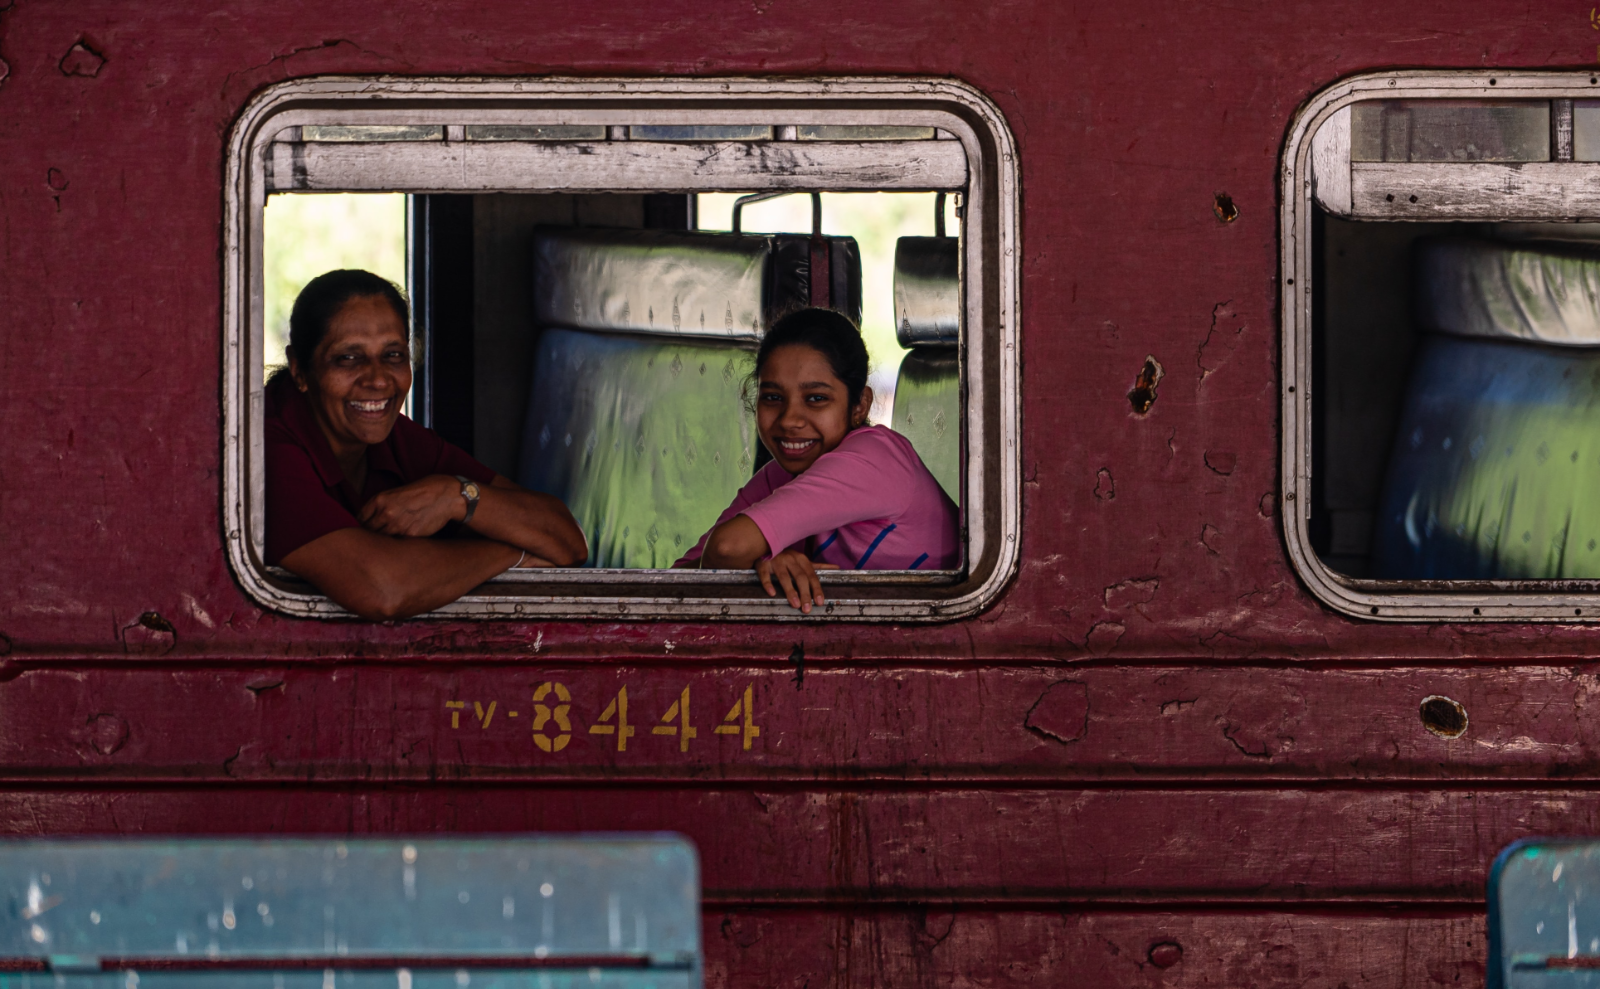 SSoP Podcast Episode 49 — Sri Lanka: Remarkable, Relentless, Resplendent